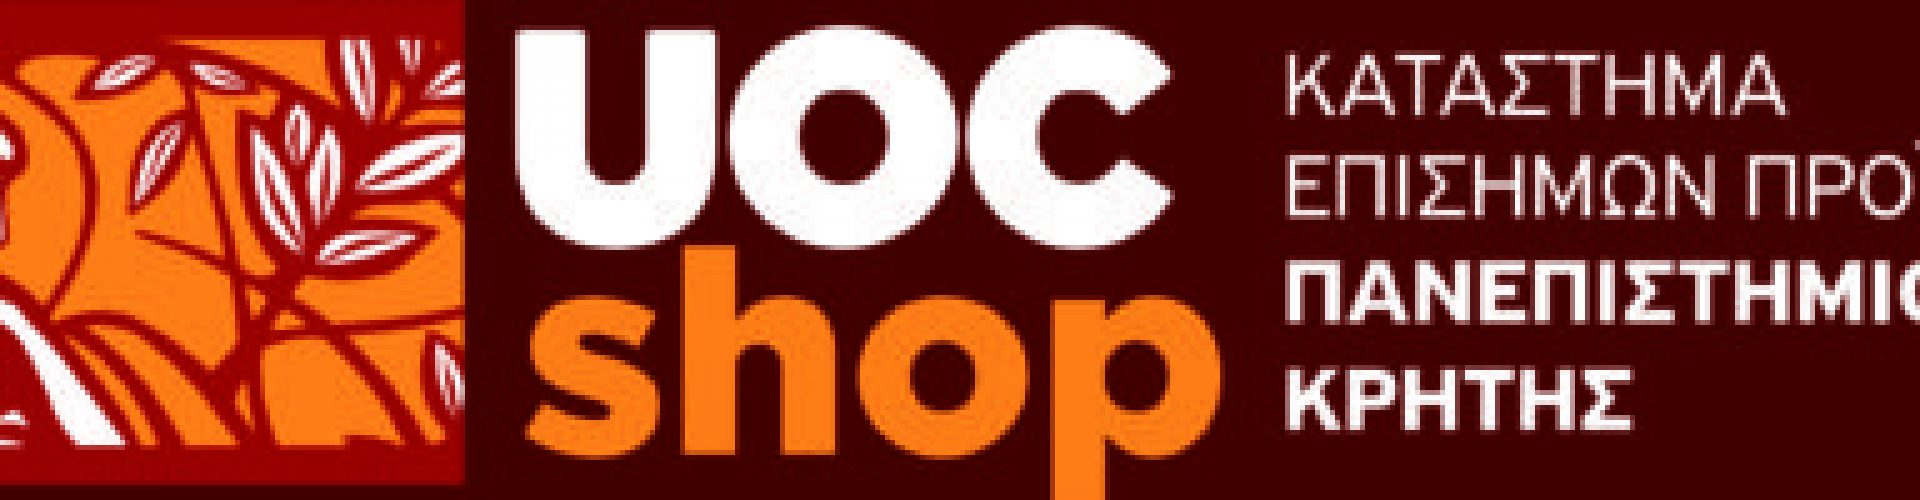 UOCshop_Logo-full-e1540489610493